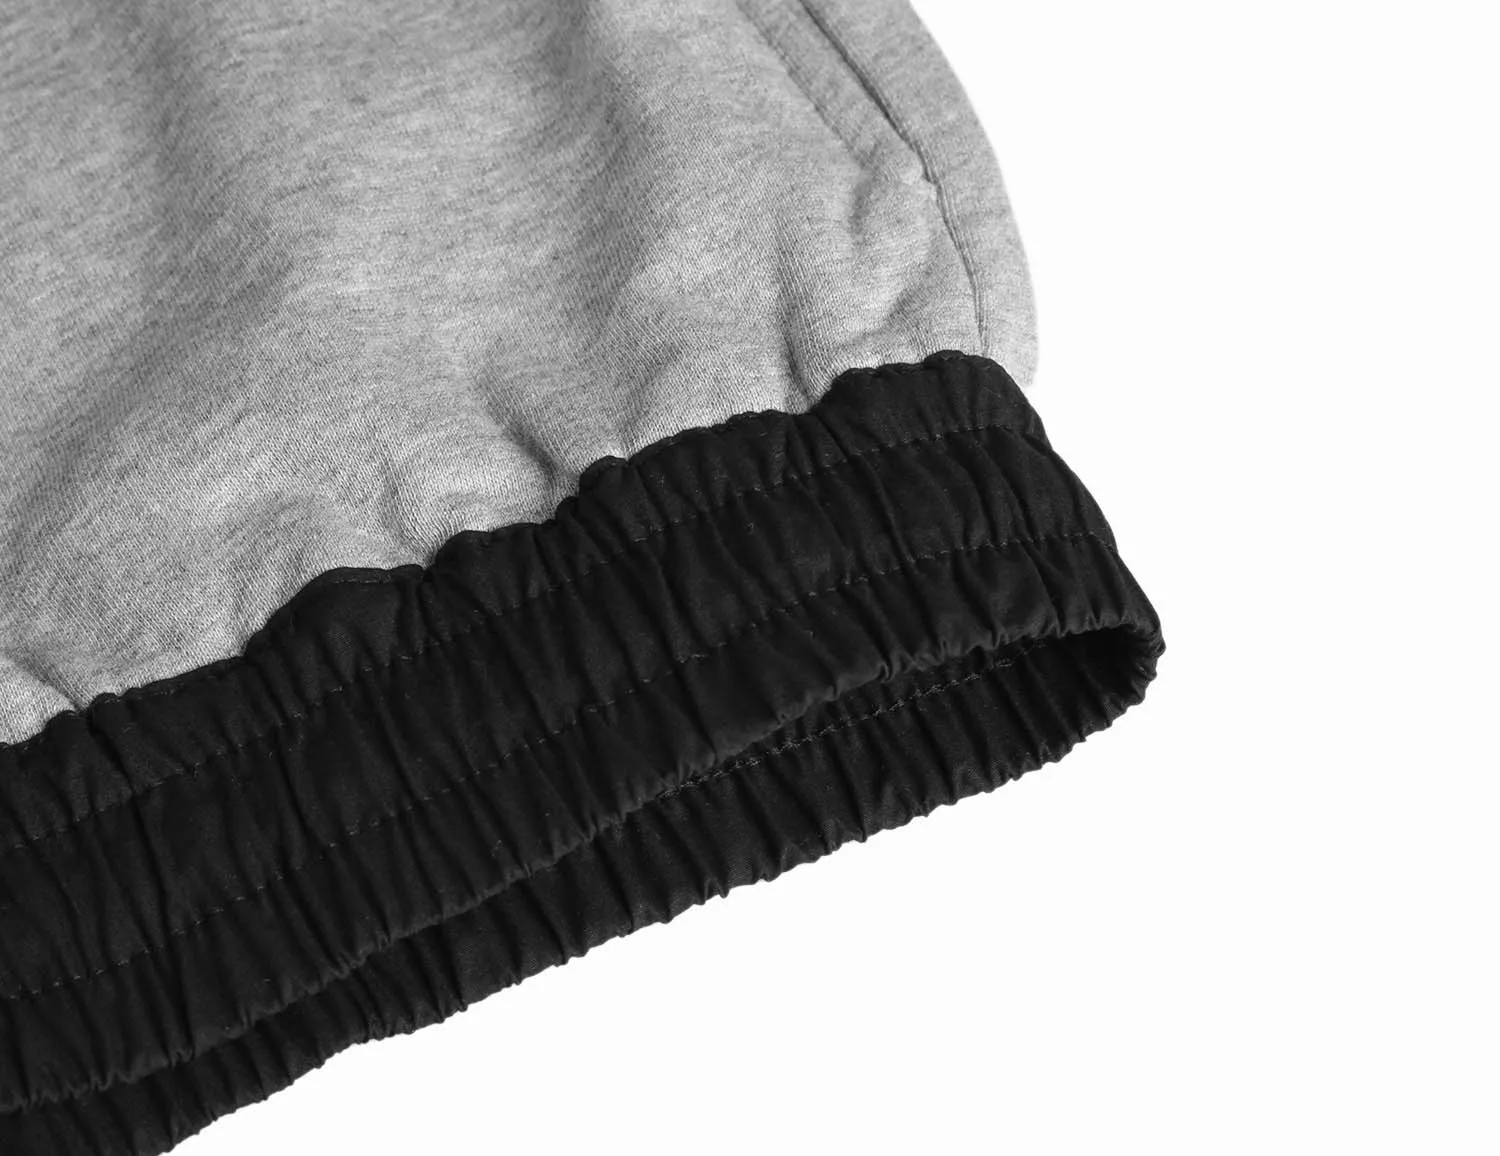 Мужские классические черные/серые мешковатые шорты с заниженным шаговым швом летние размеры M-4XL